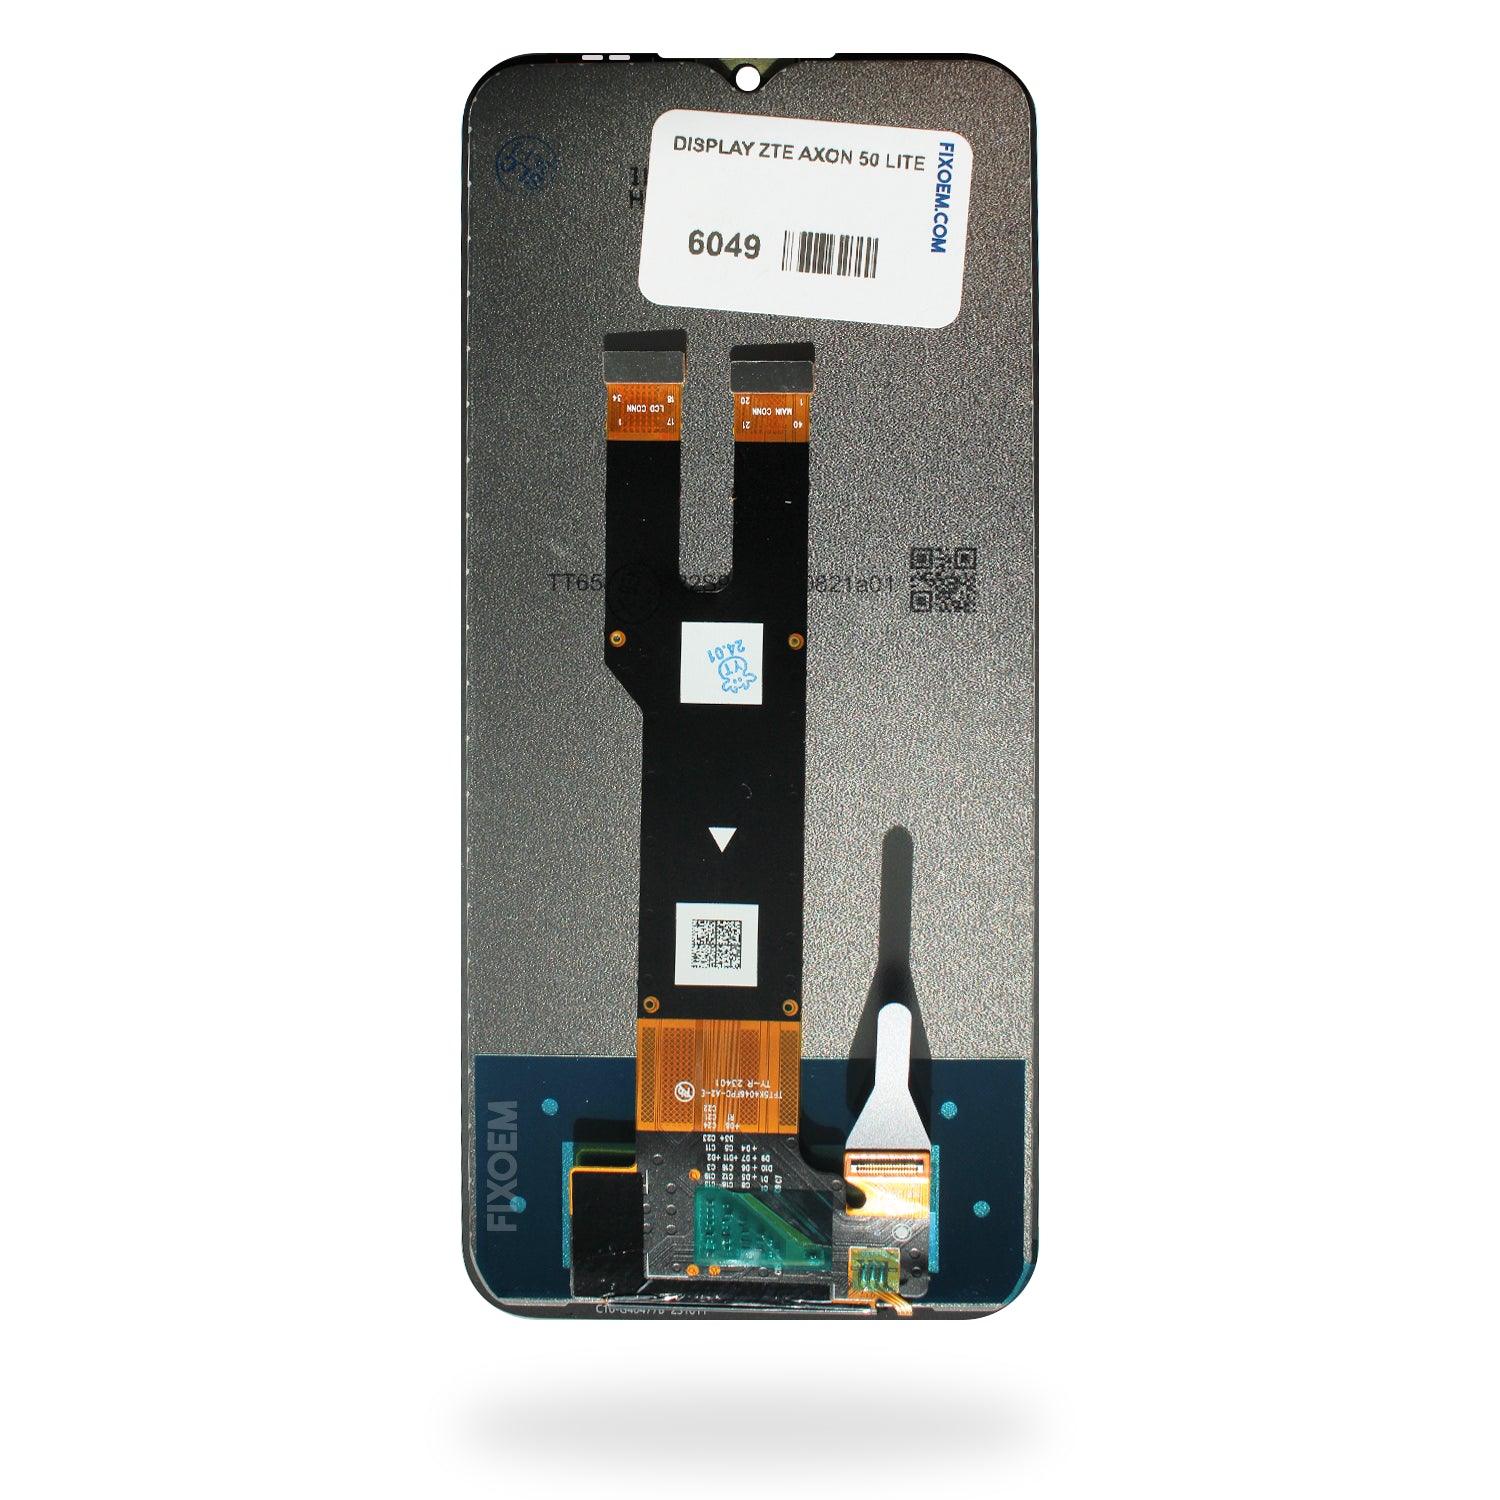 Display Zte Axon 50 Lite IPS a solo $ 280.00 Refaccion y puestos celulares, refurbish y microelectronica.- FixOEM